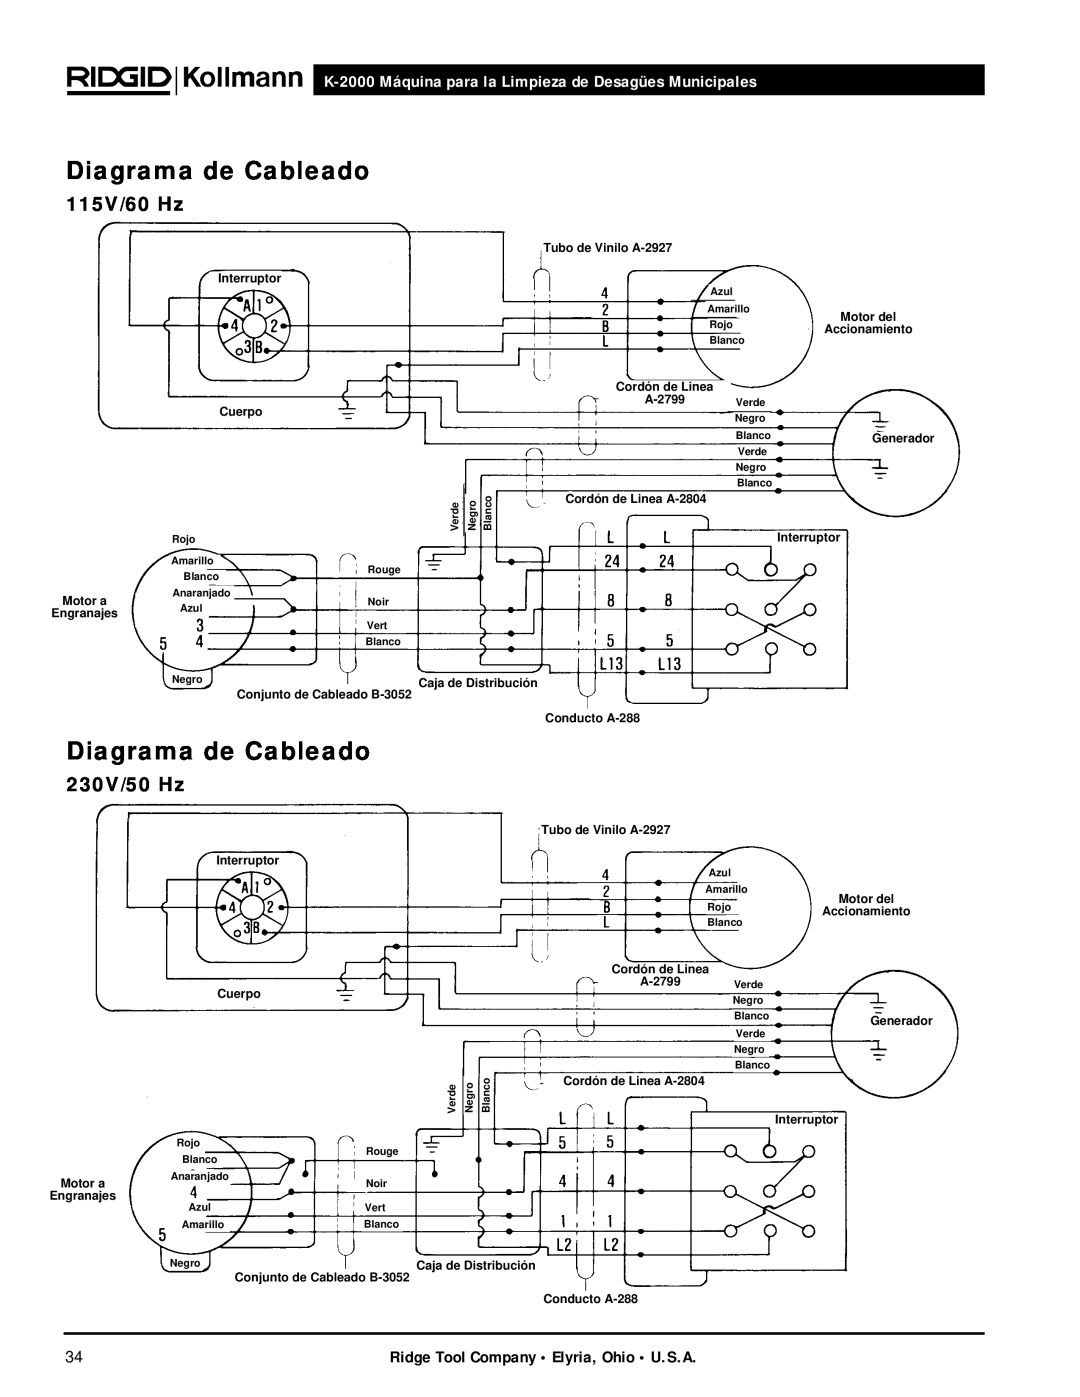 RIDGID manual Diagrama de Cableado, 115V/60 Hz, 230V/50 Hz, K-2000 Máquina para la Limpieza de Desagües Municipales 